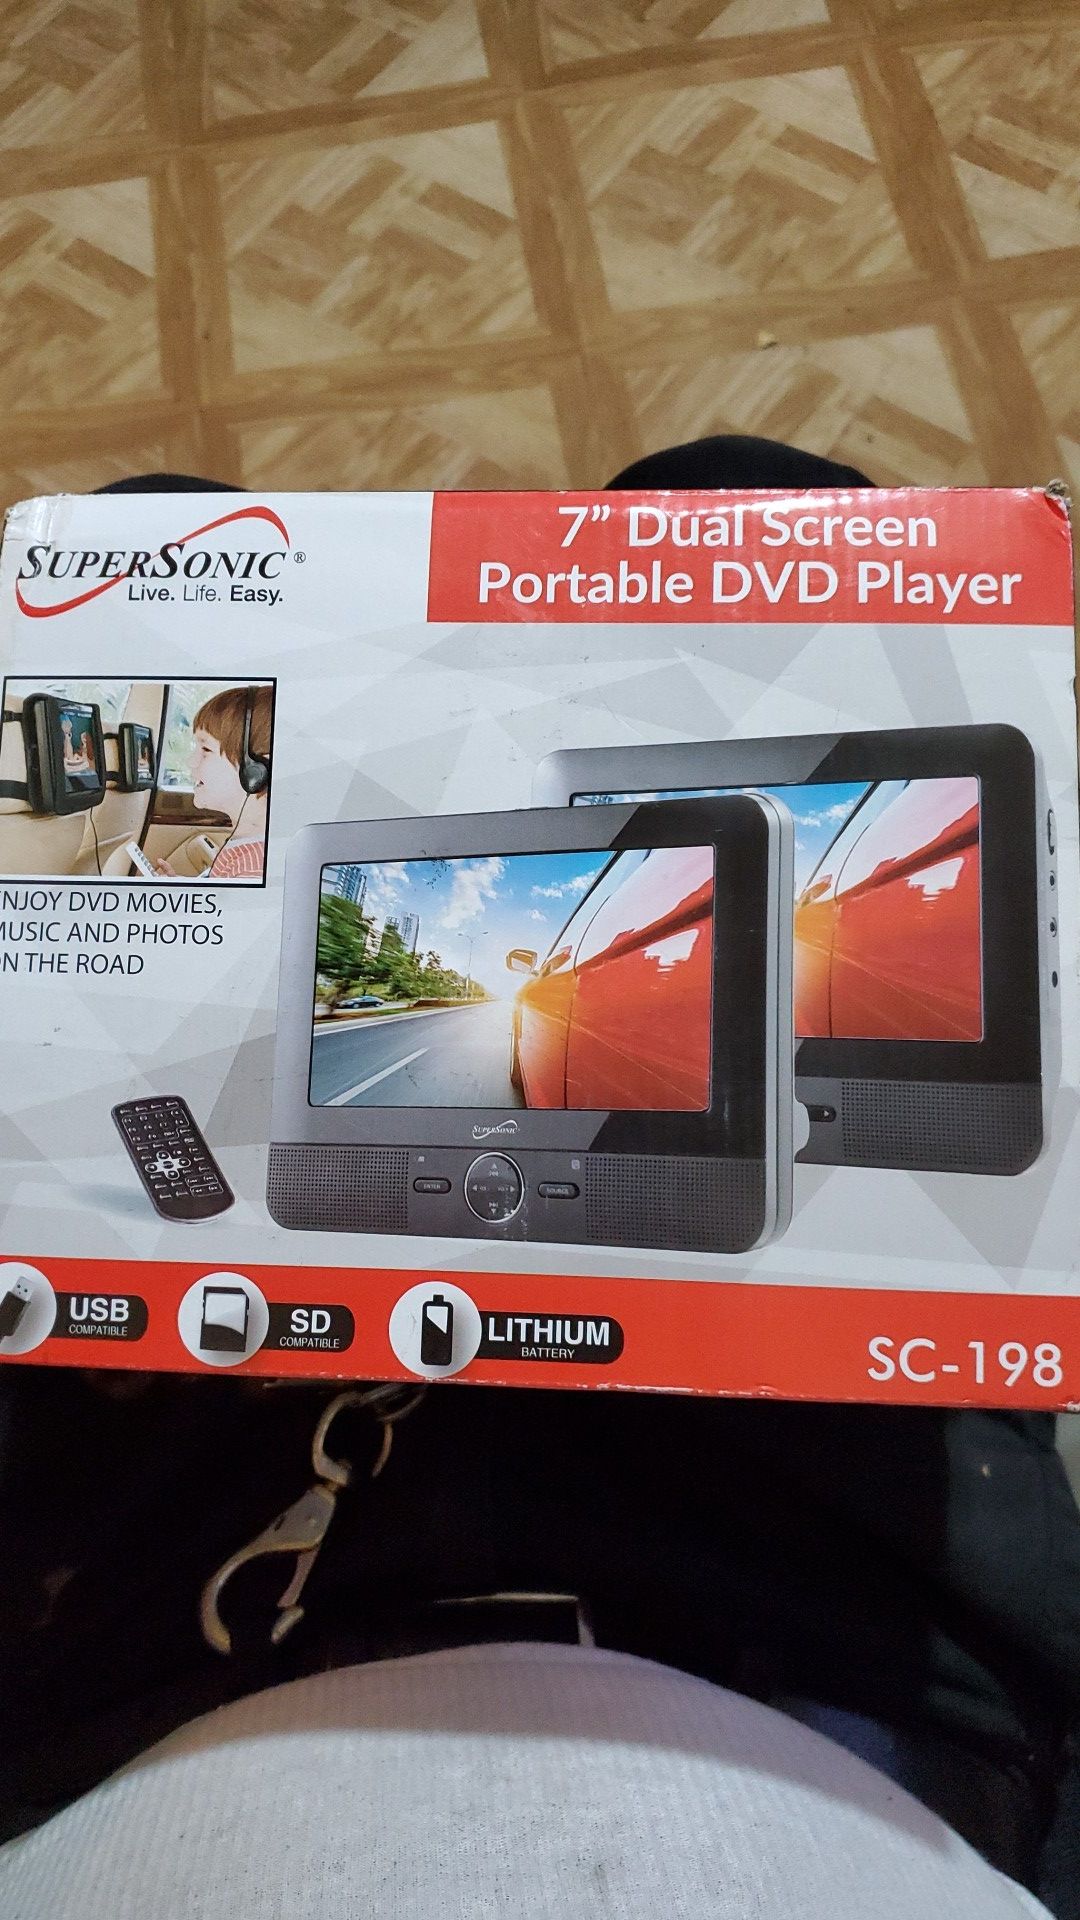 S.S. 7" Portable Dual screen D V D